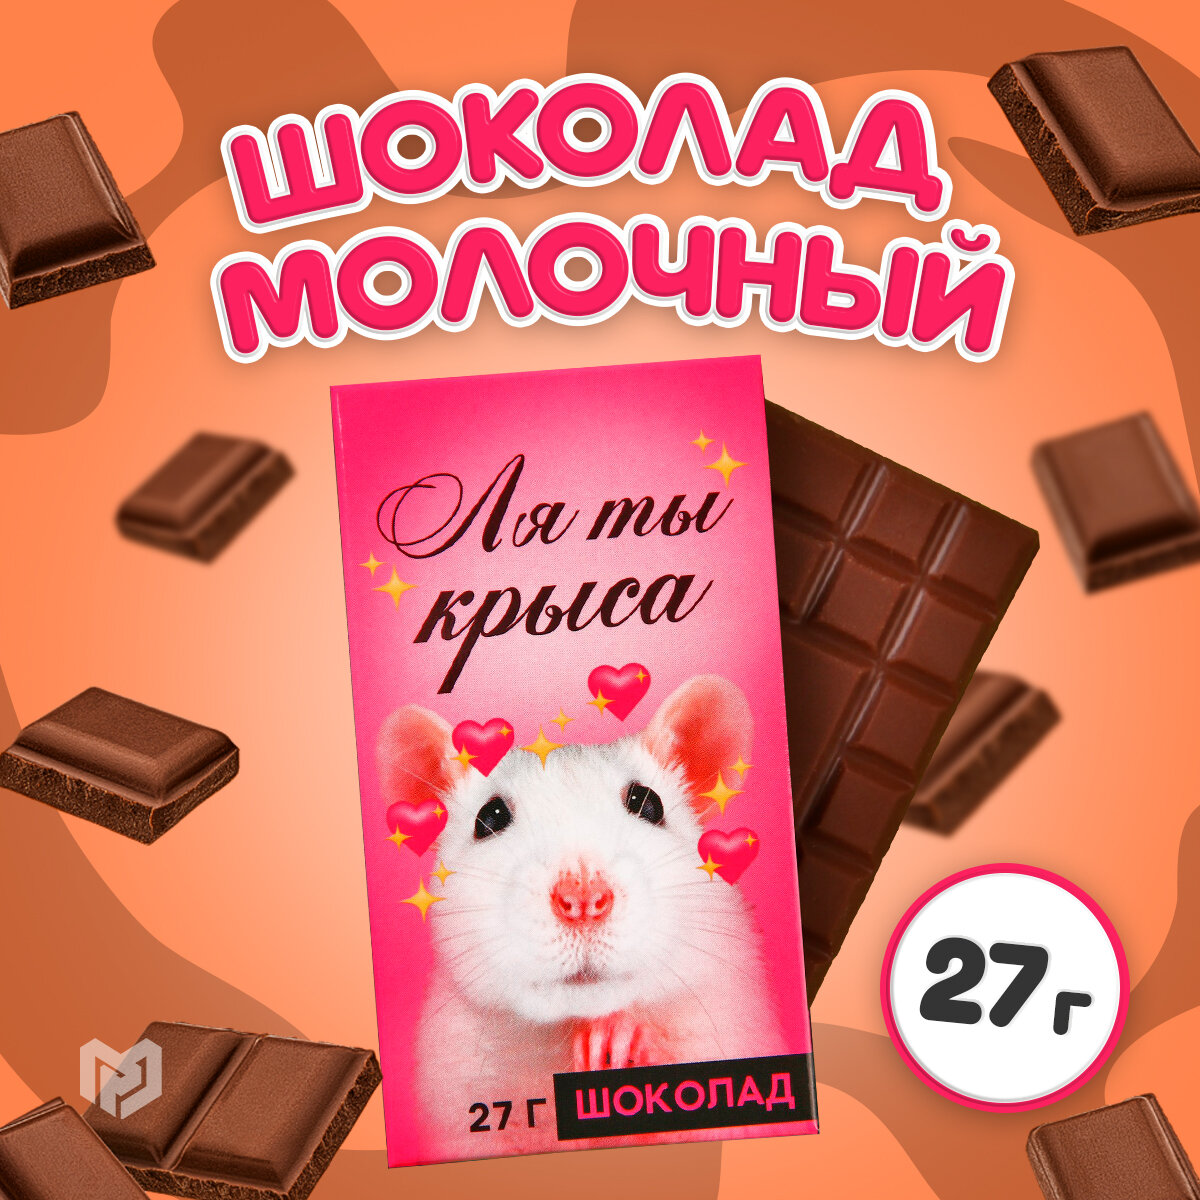 Шоколад молочный «Ля ты крыса», 27 г.